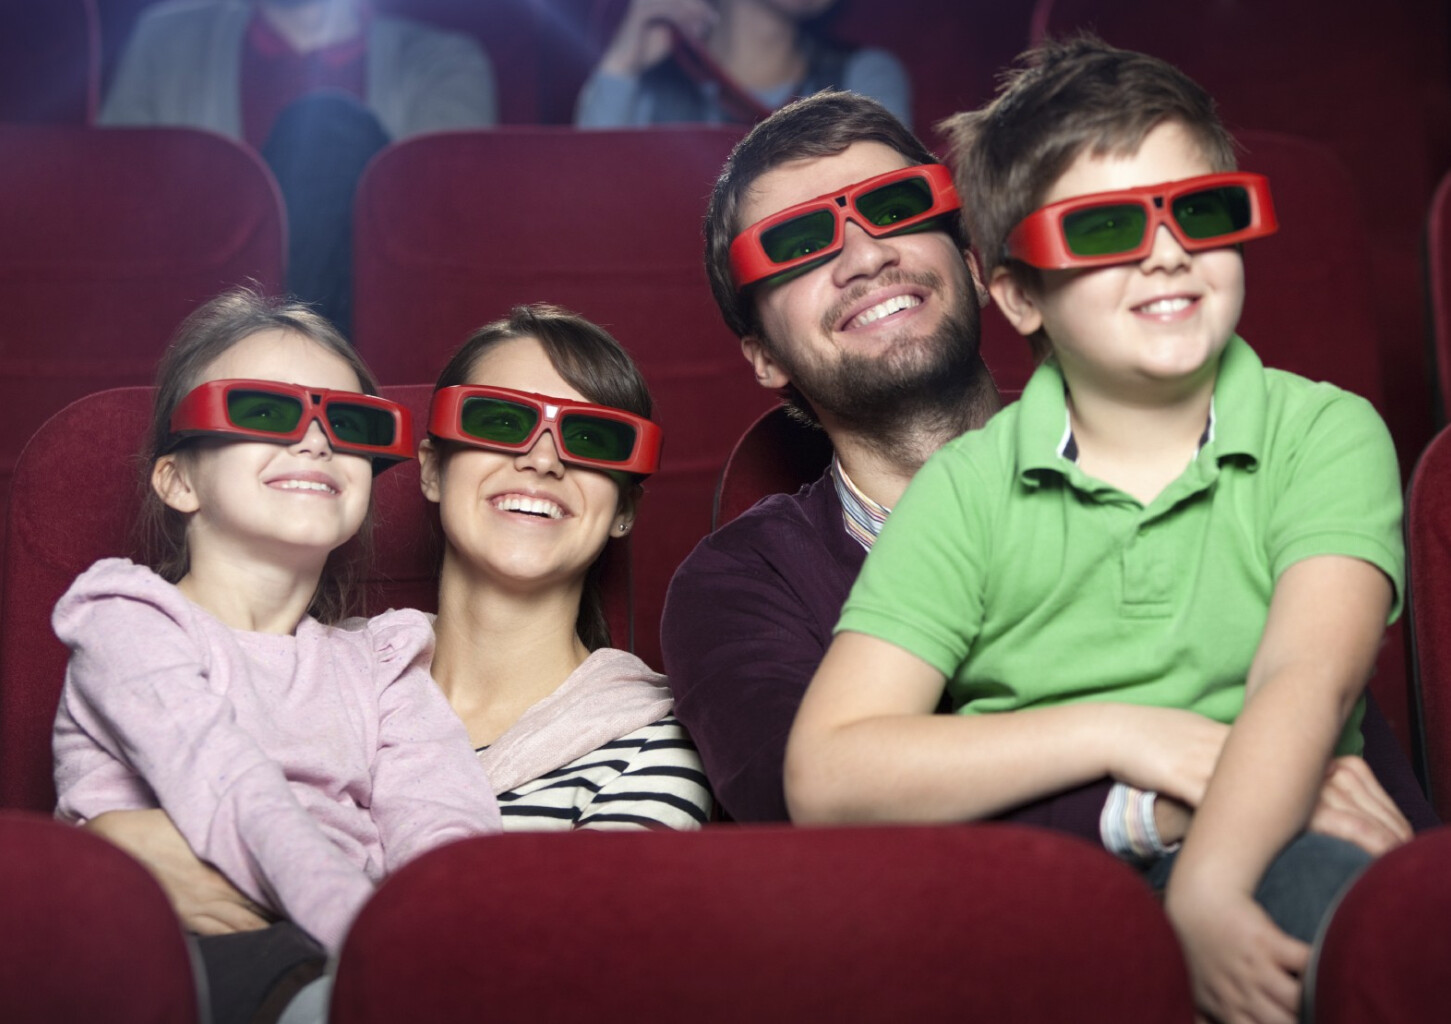 Kino apmeklējums ģimenei kinoteātrī CINAMON